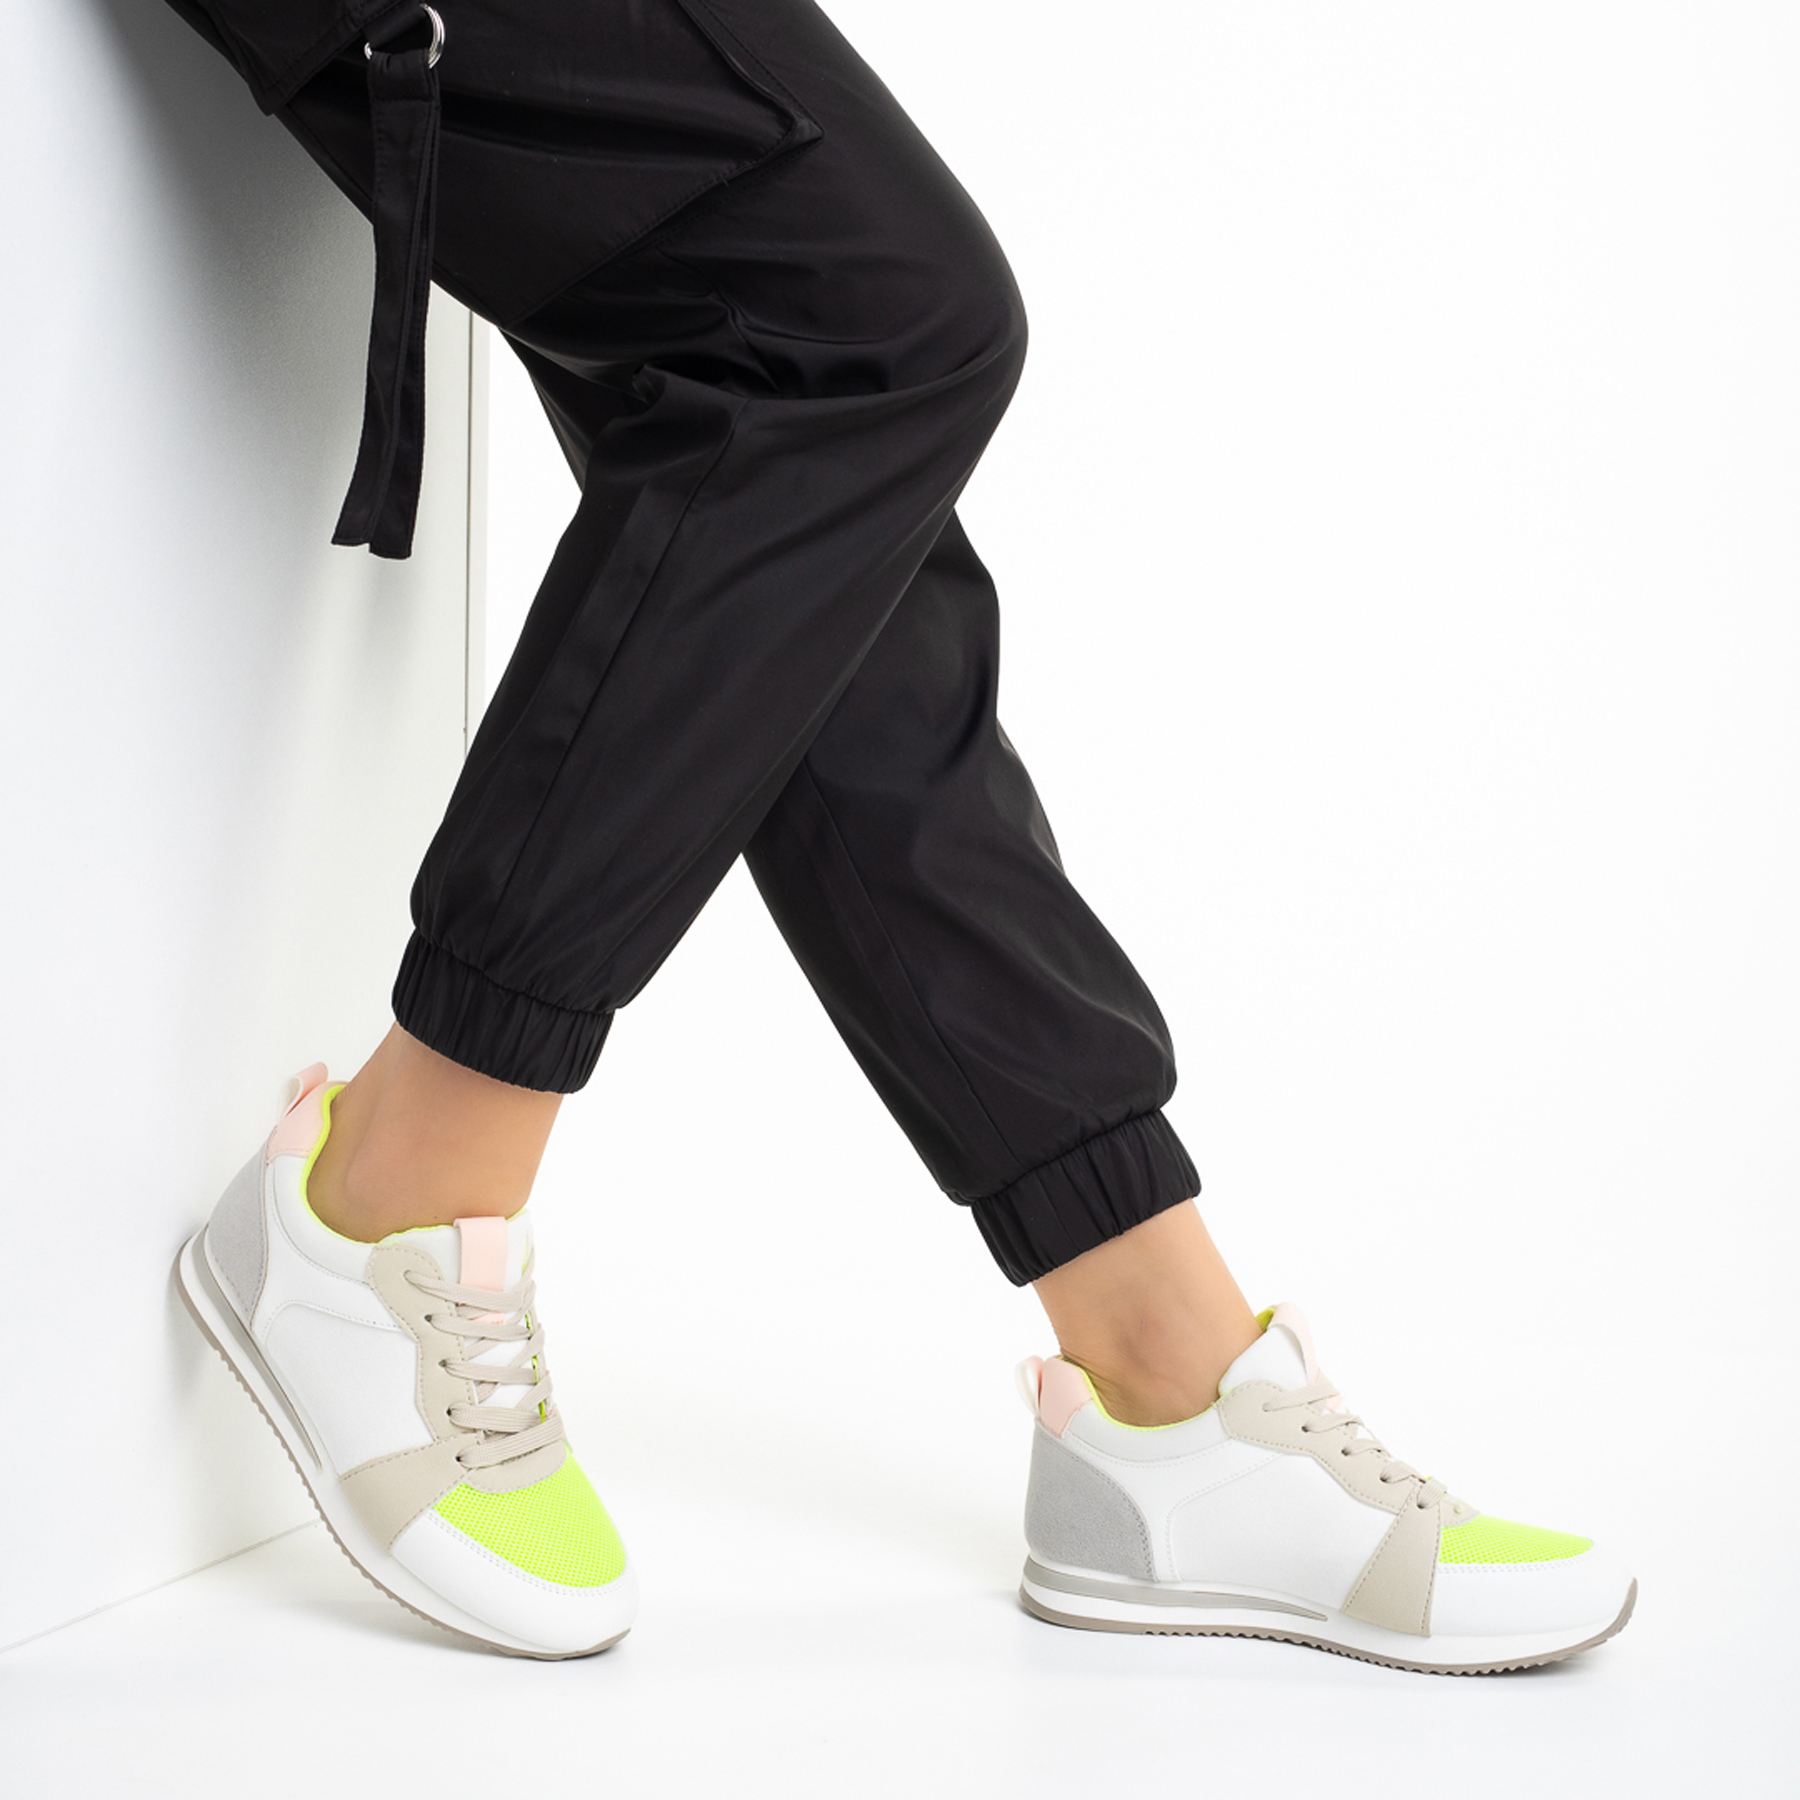 Дамски спортни обувки  бели със зелено от еко кожа и текстилен материал  Clarita, 5 - Kalapod.bg